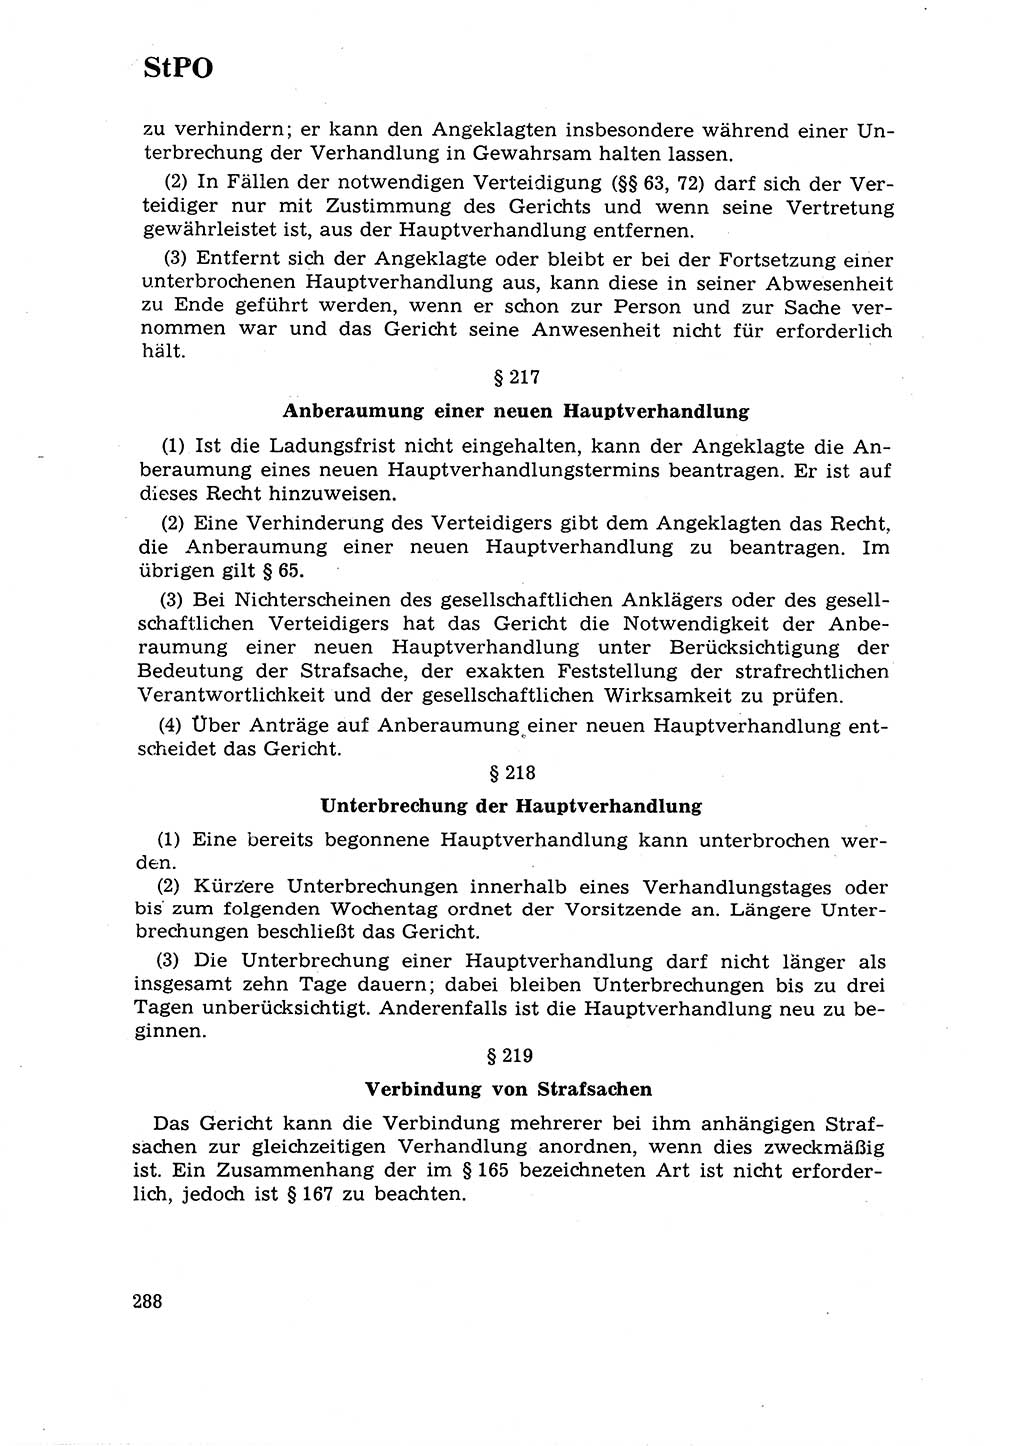 Strafrecht [Deutsche Demokratische Republik (DDR)] 1968, Seite 288 (Strafr. DDR 1968, S. 288)